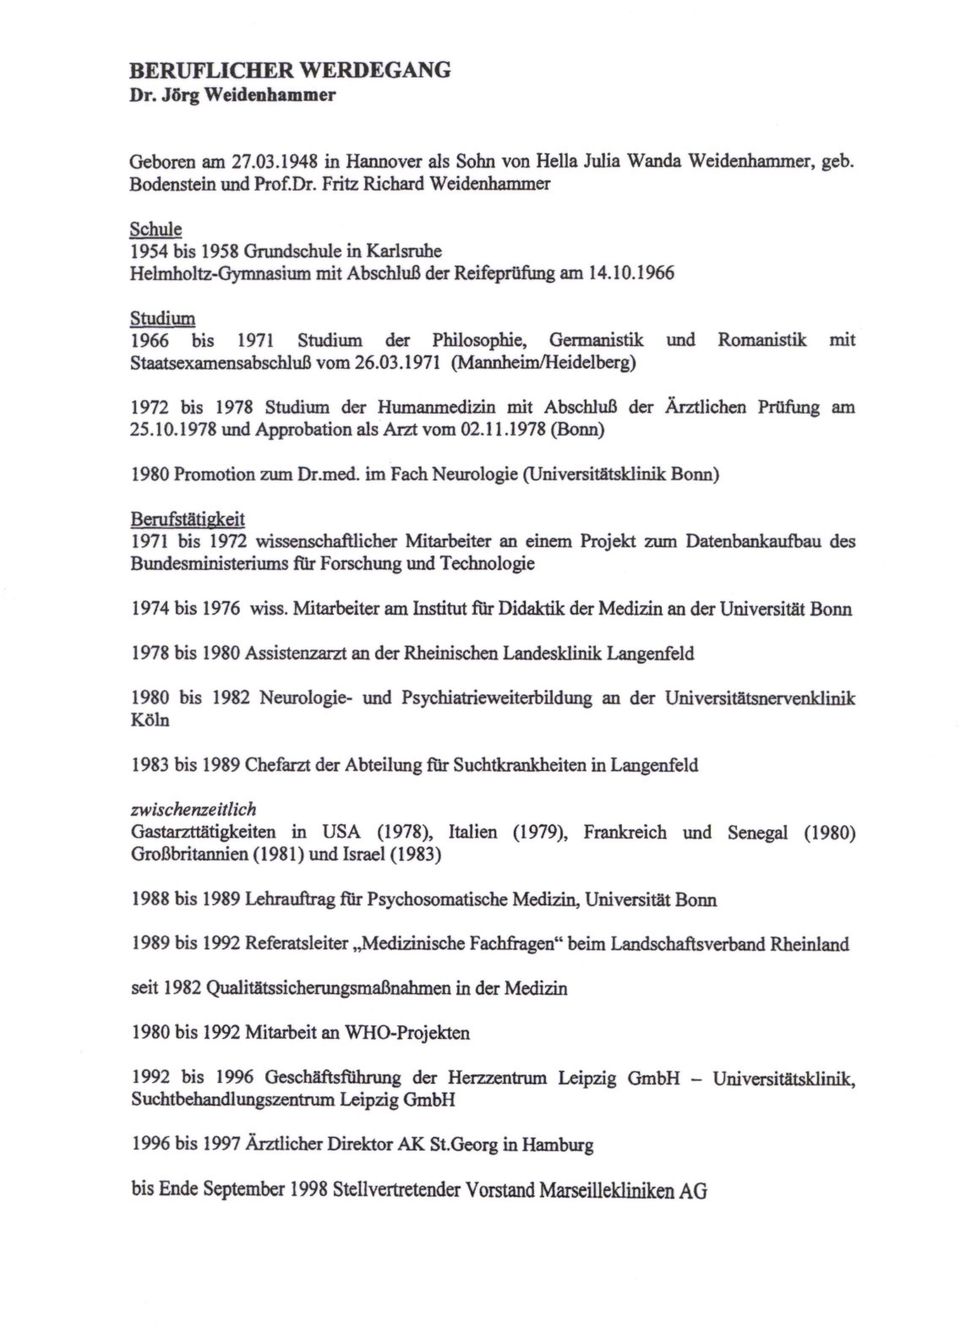 1966 Studium 1966 bis 1971 Studium der Philosophie, Germanistik und Romanistik mit StaatsexamensabschluB vom 26.03.